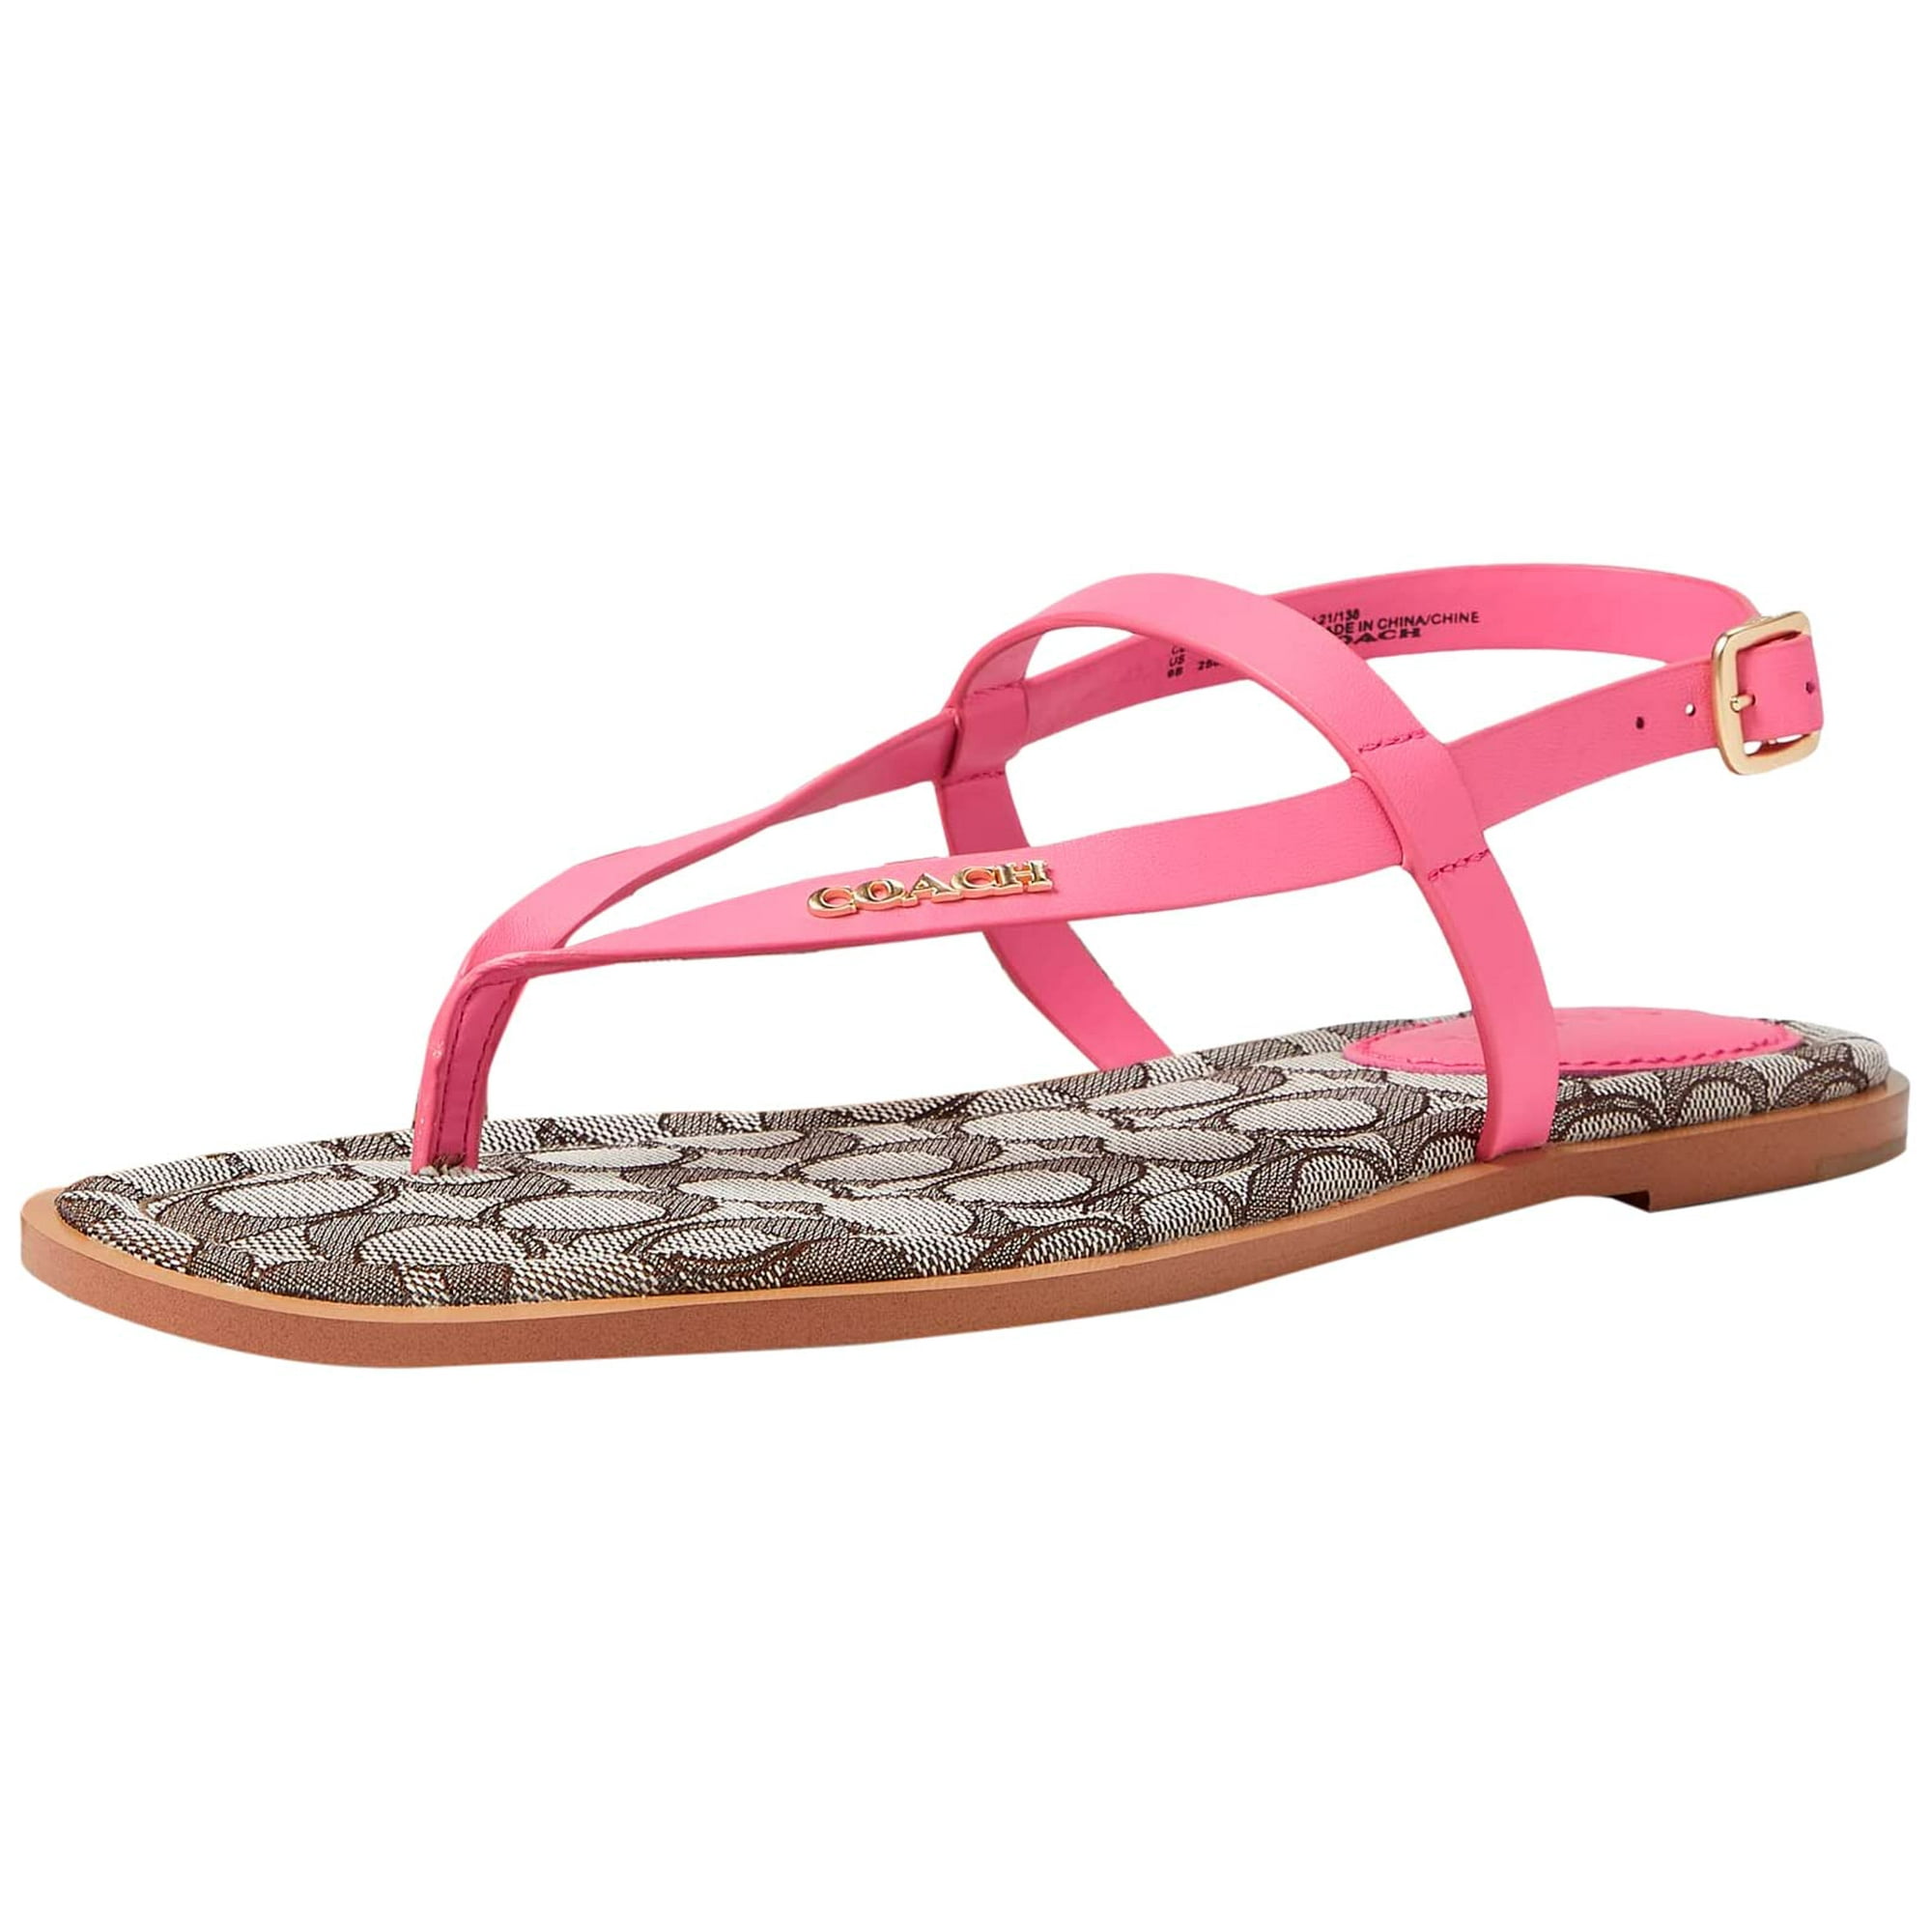 COACH Women's Josie Leather Sandals Pink 5 B - Medium | Walmart Canada